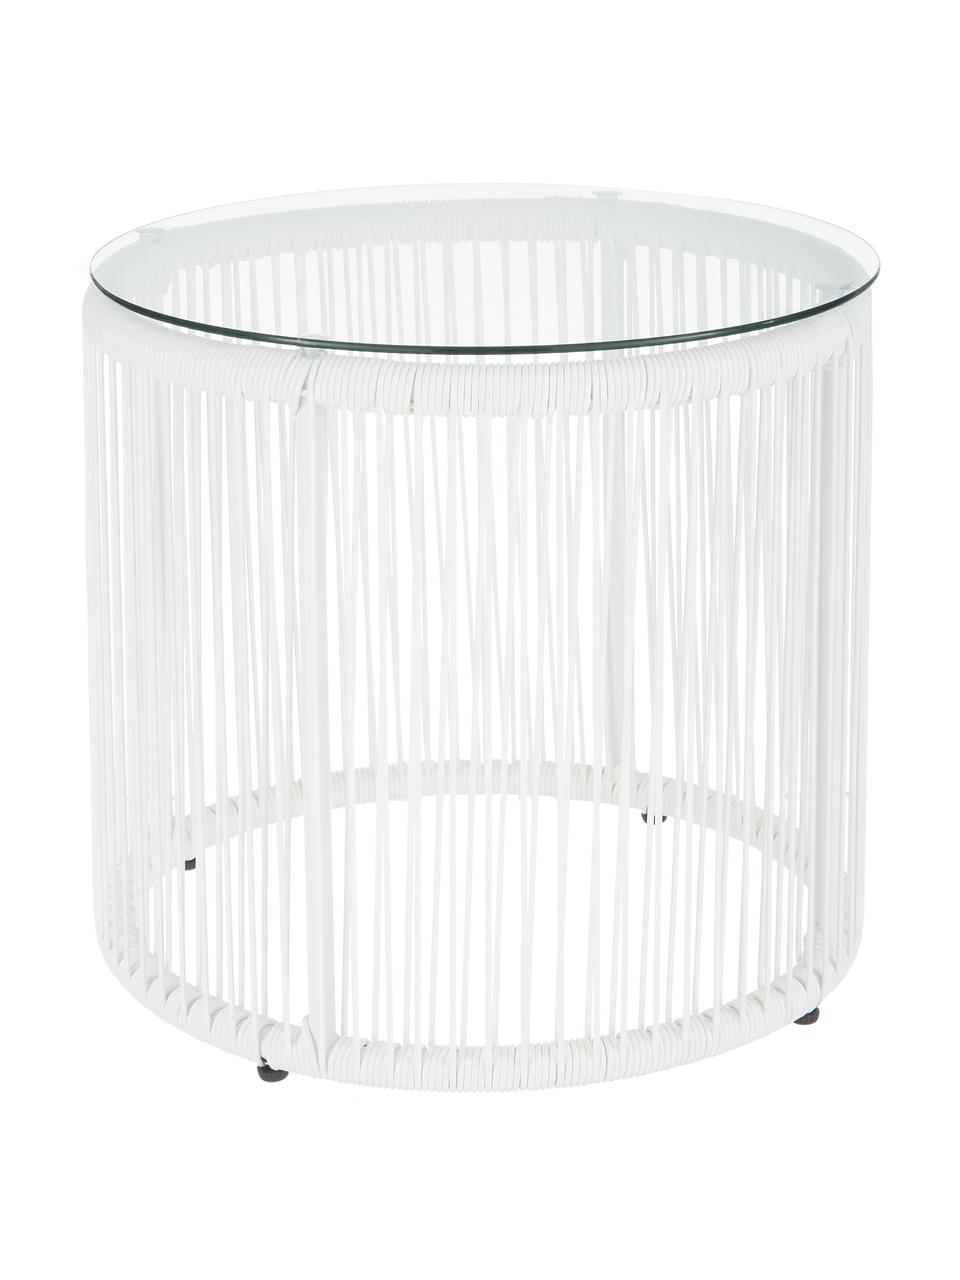 Beistelltisch Bahia aus Kunststoff-Geflecht in Weiß, Tischplatte: Glas, Gestell: Aluminium, pulverbeschich, Weiß, Ø 50 x H 45 cm